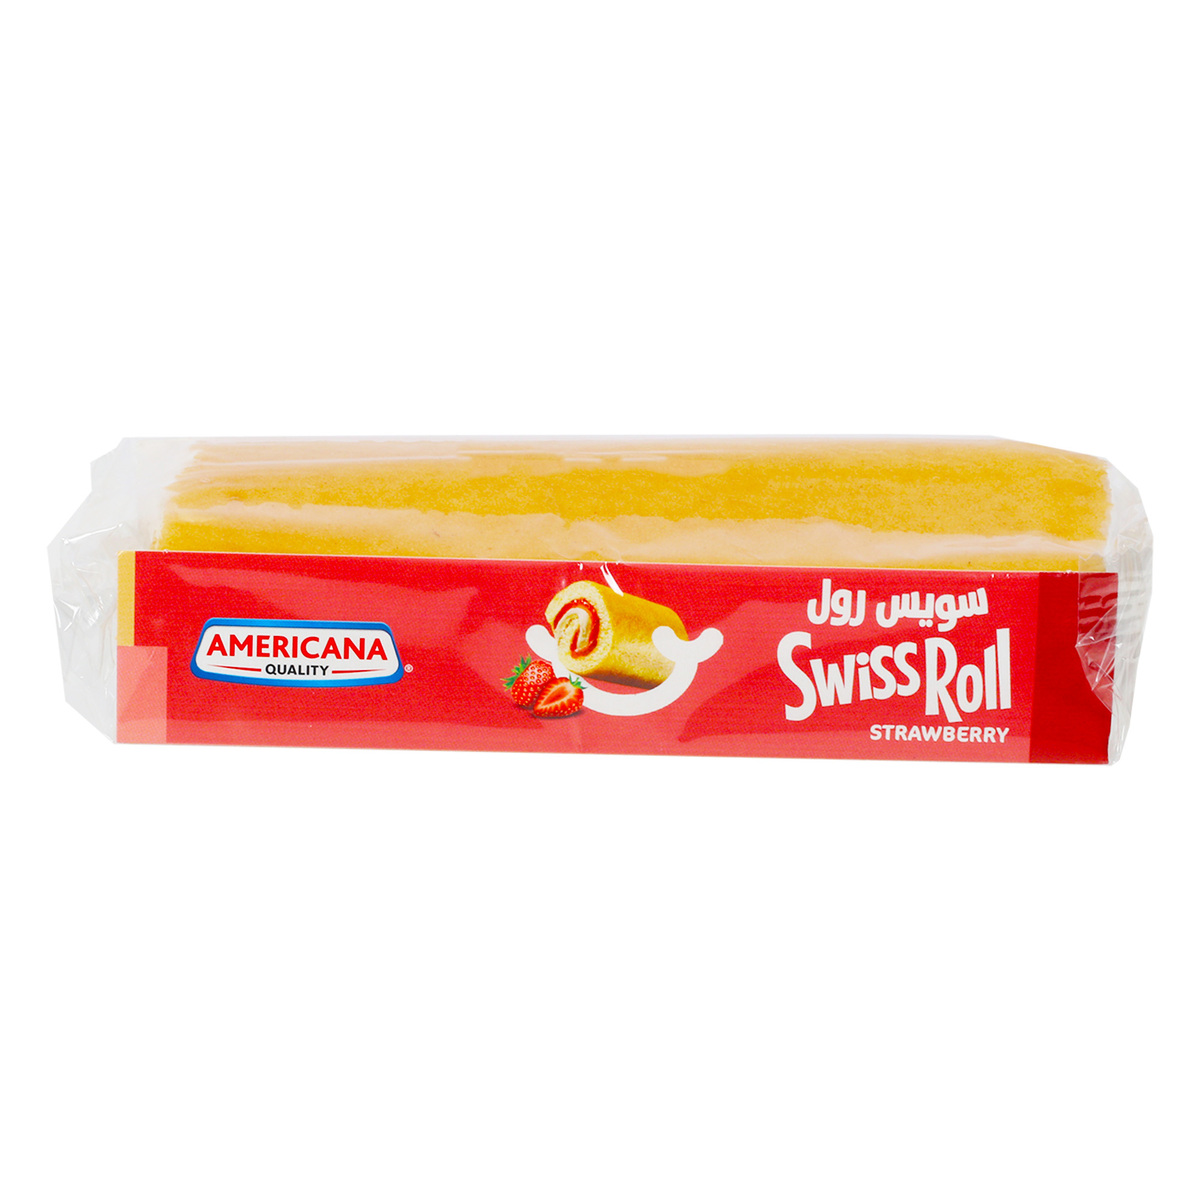 LuLu Super Roll Vanilla 2 x 360 g Online at Best Price